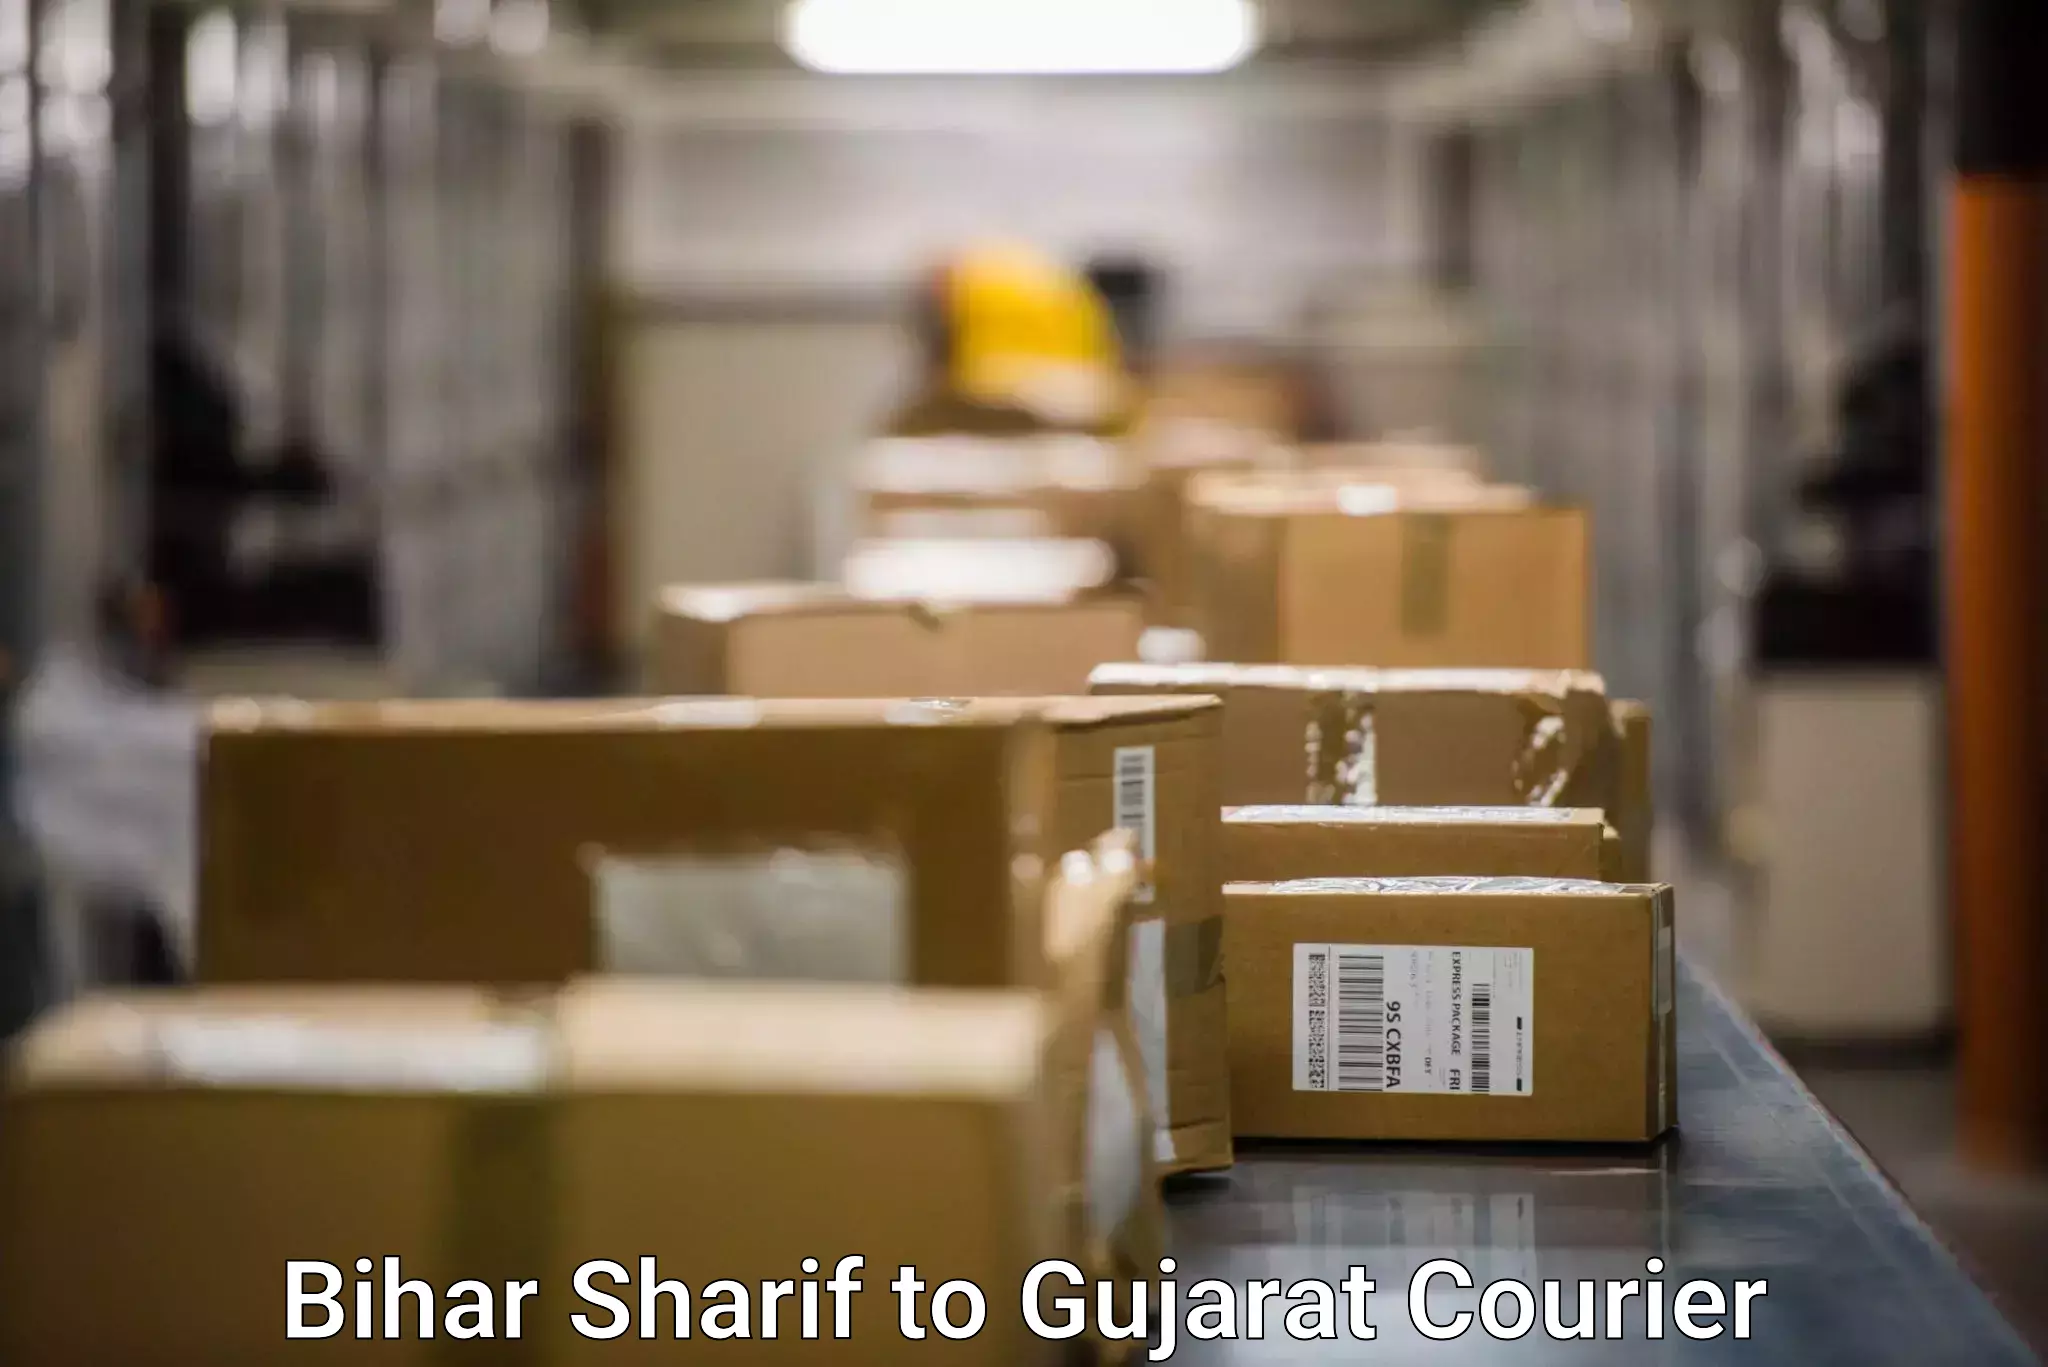 Seamless shipping service Bihar Sharif to Sanand